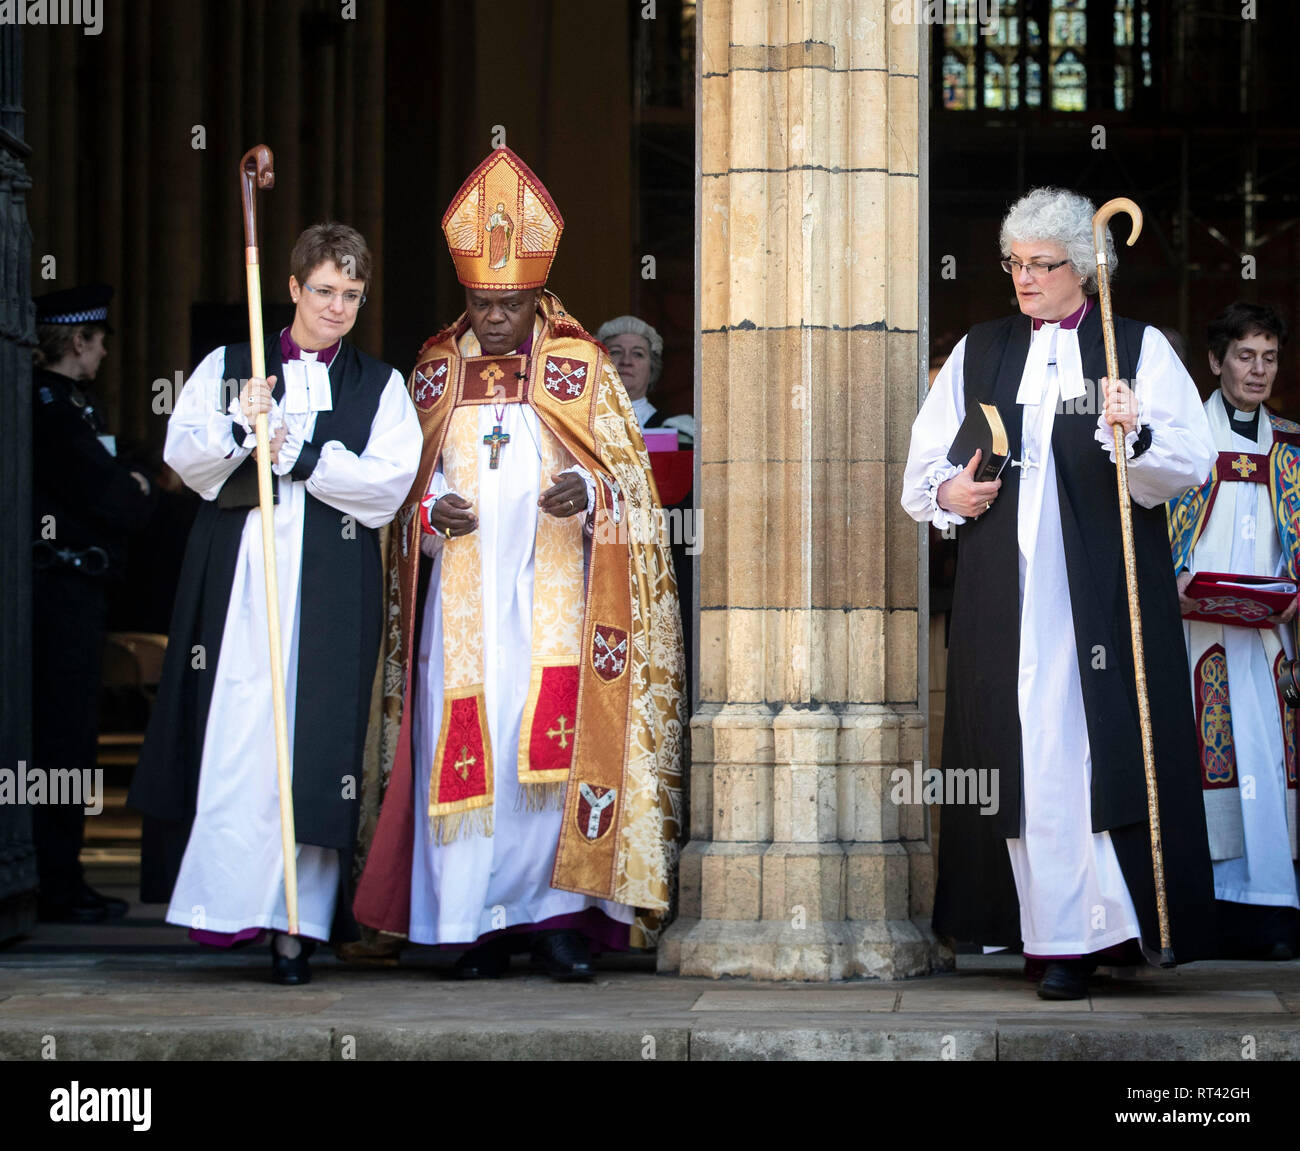 Dr Emma Gwyneth (à gauche), le Dr John Sentamu et Sarah Elizabeth après une double consécration de la Le Révérend Dr Emma Gwyneth comme l'évêque suffragant de Penrith dans le diocèse de Carlisle et le vénérable Sarah Elizabeth Clark comme l'évêque suffragant de Jarrow, dans le diocèse de Durham, au cours d'une cérémonie à la cathédrale de York, dans le Yorkshire. Banque D'Images